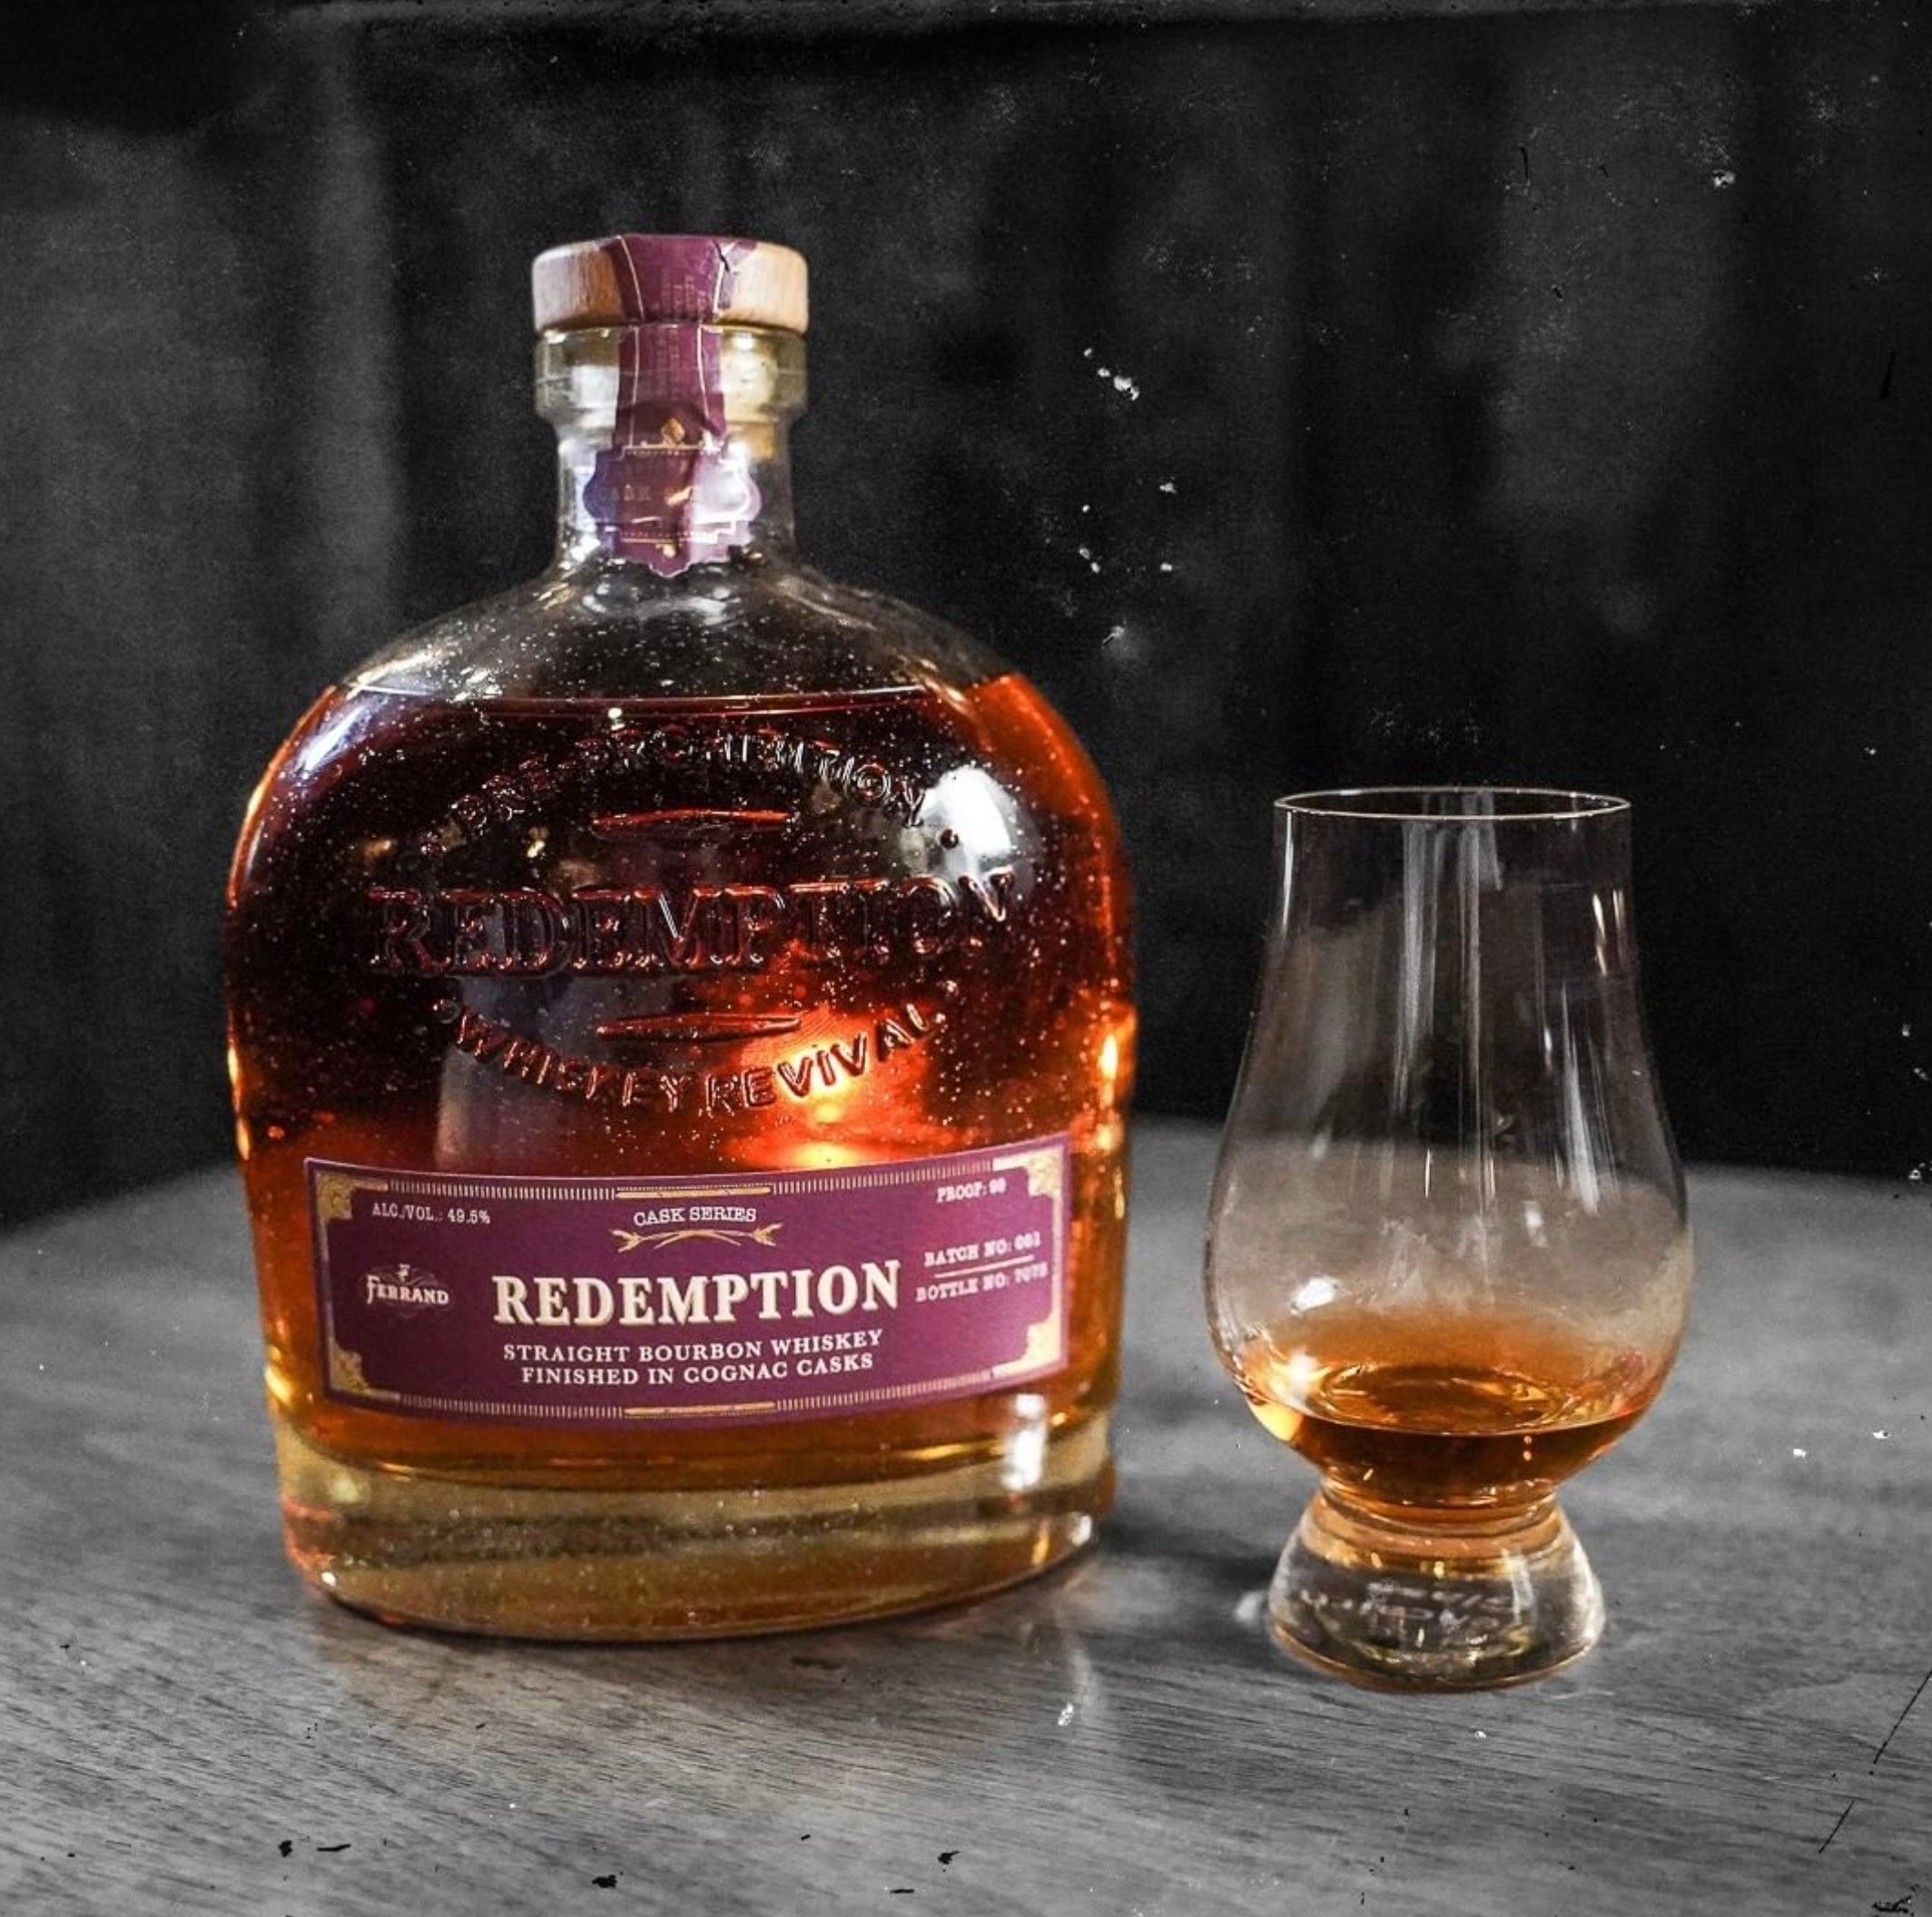 Redemption Cognac Cask Finish Bourbon